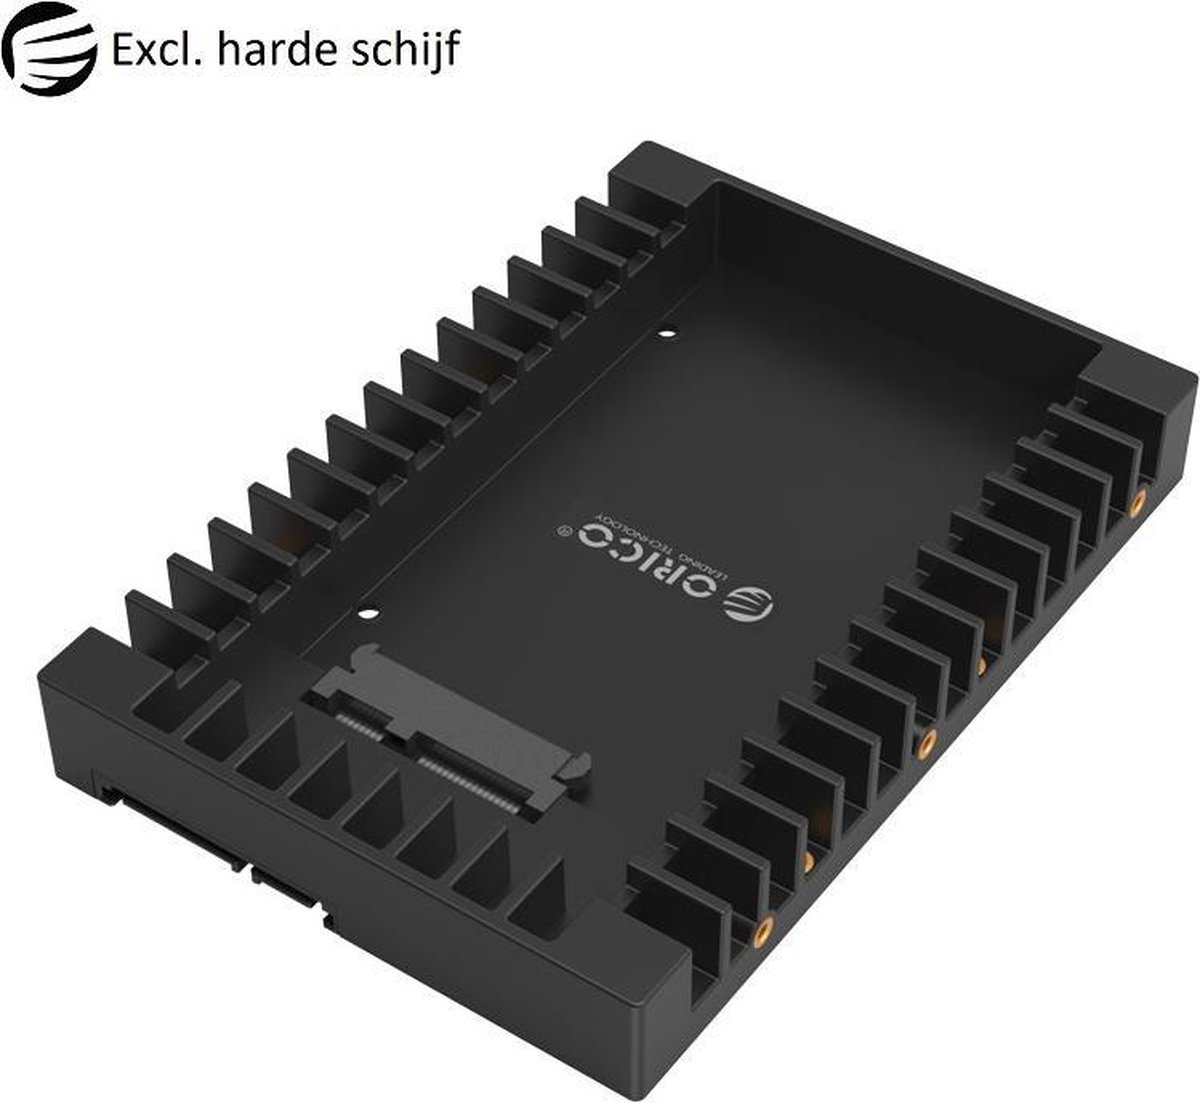 tellen Aanzetten leven Orico - 2.5 naar 3.5 inch harde schijf converter adapter caddy | bol.com